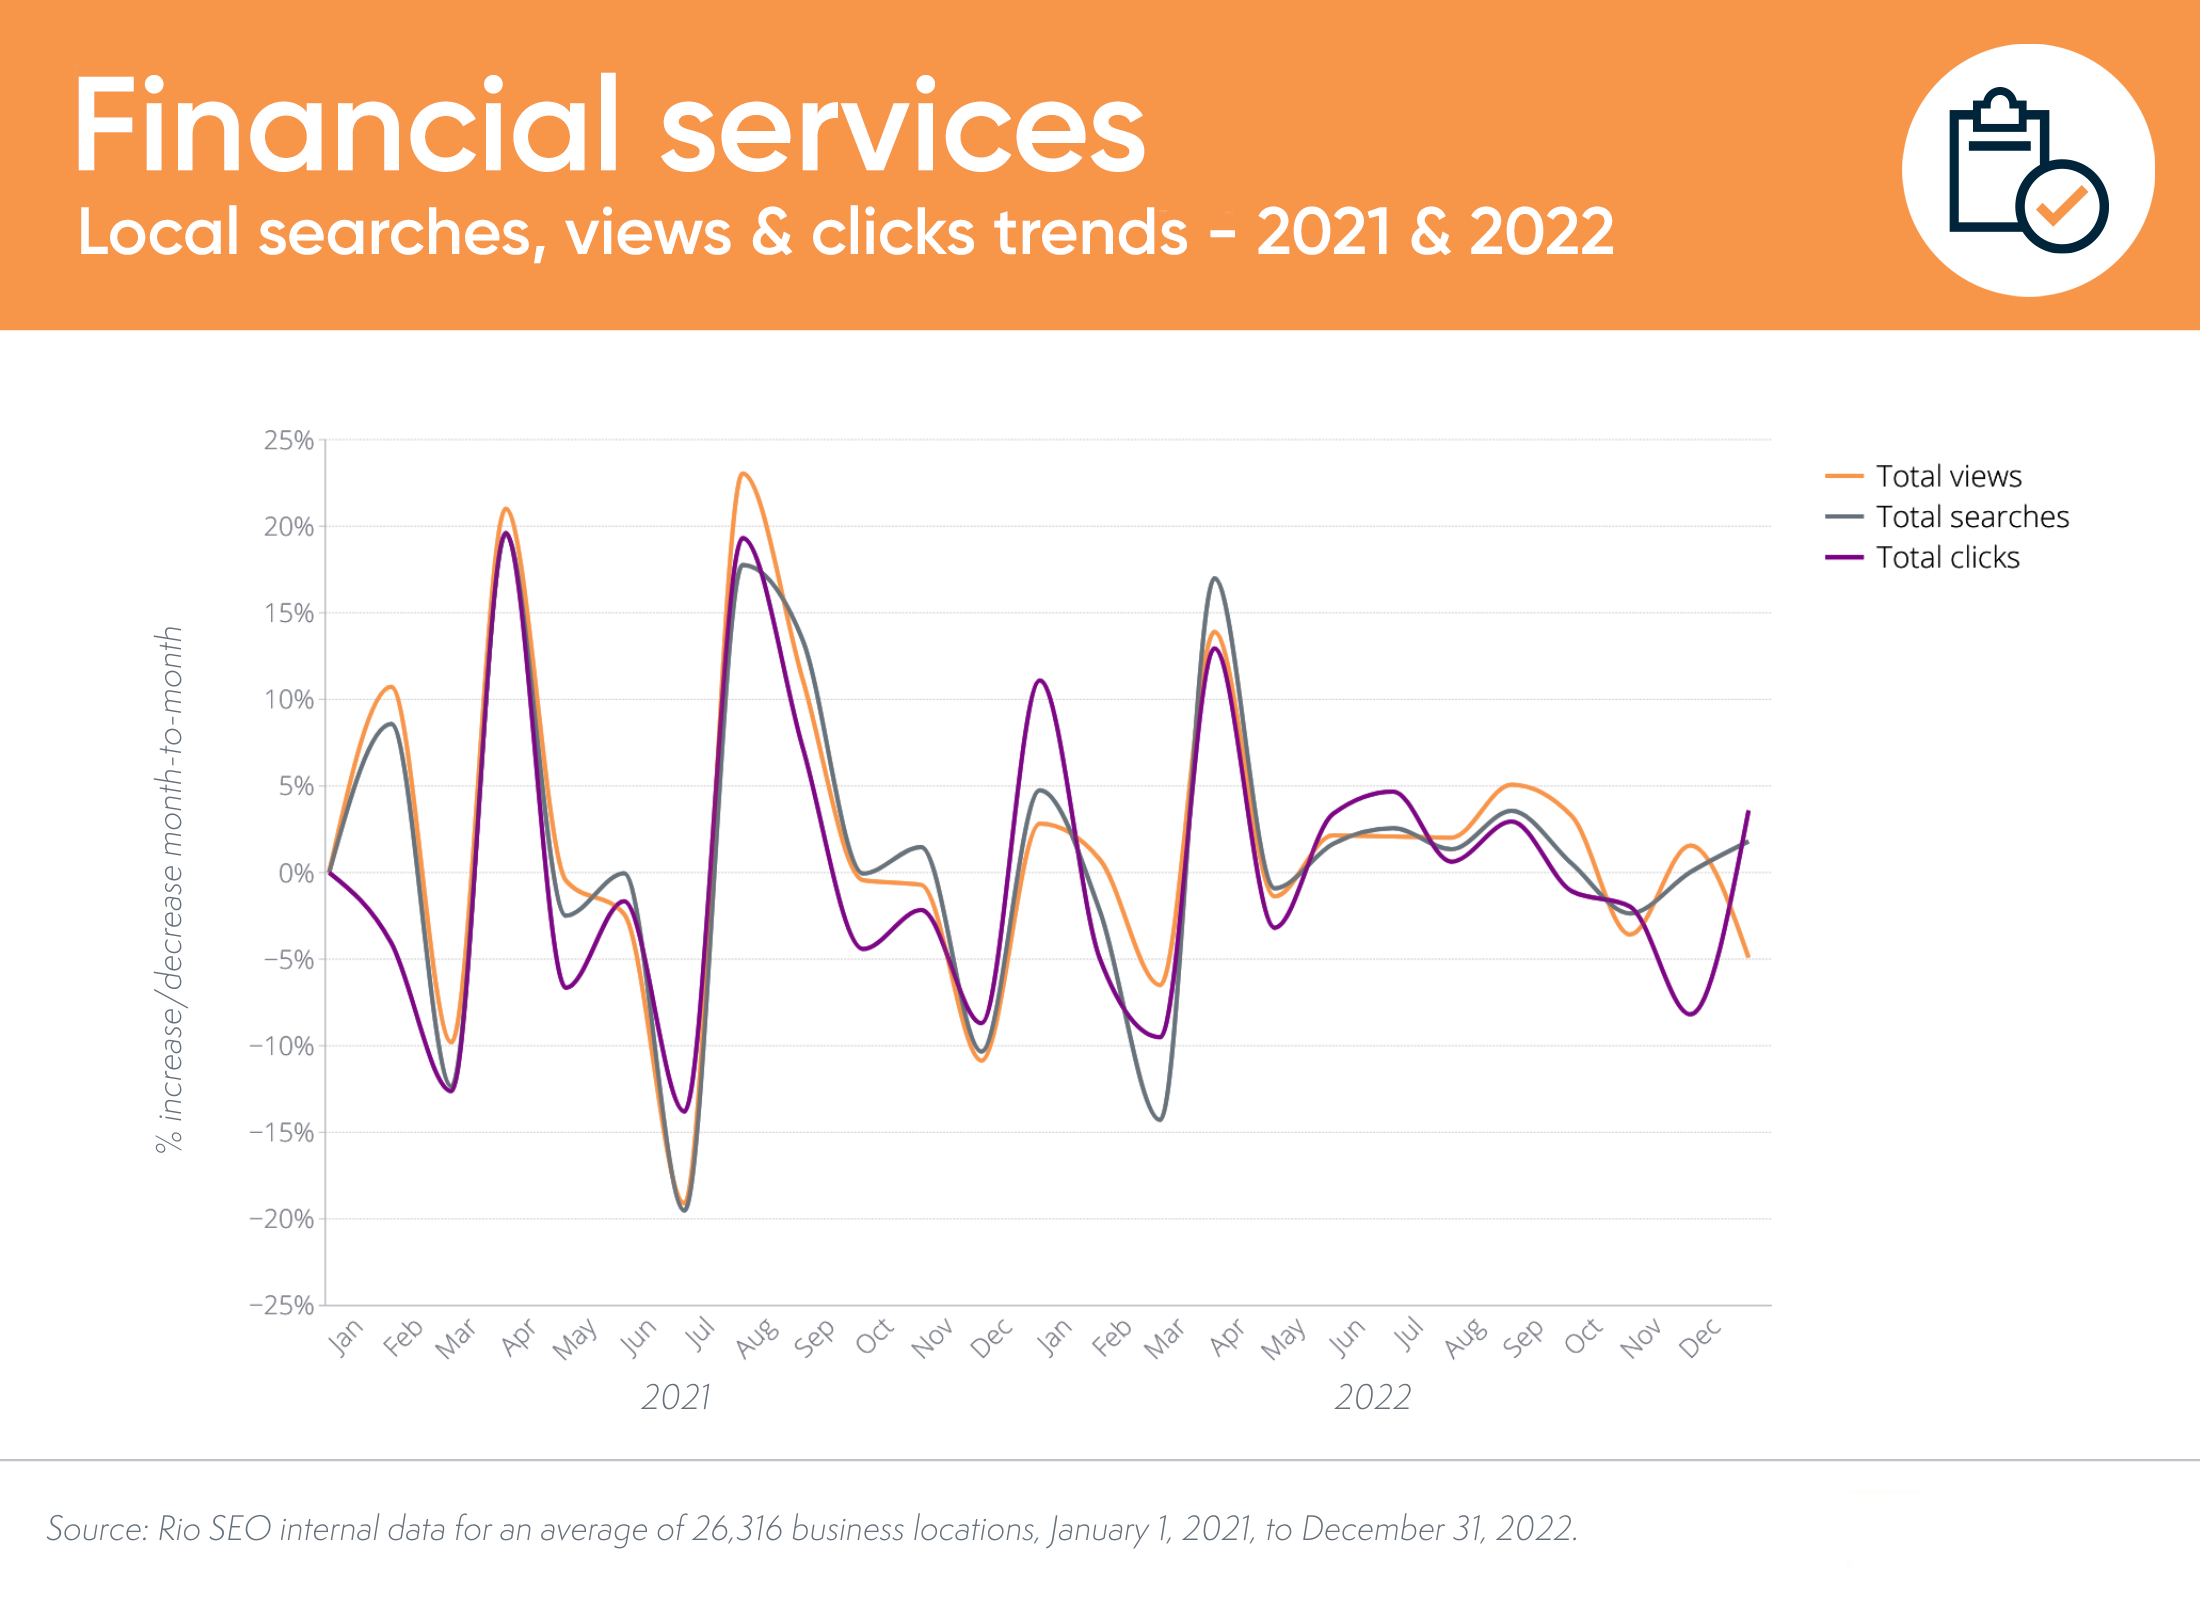 usługi finansowe lokalne trendy wyszukiwania i konwersji